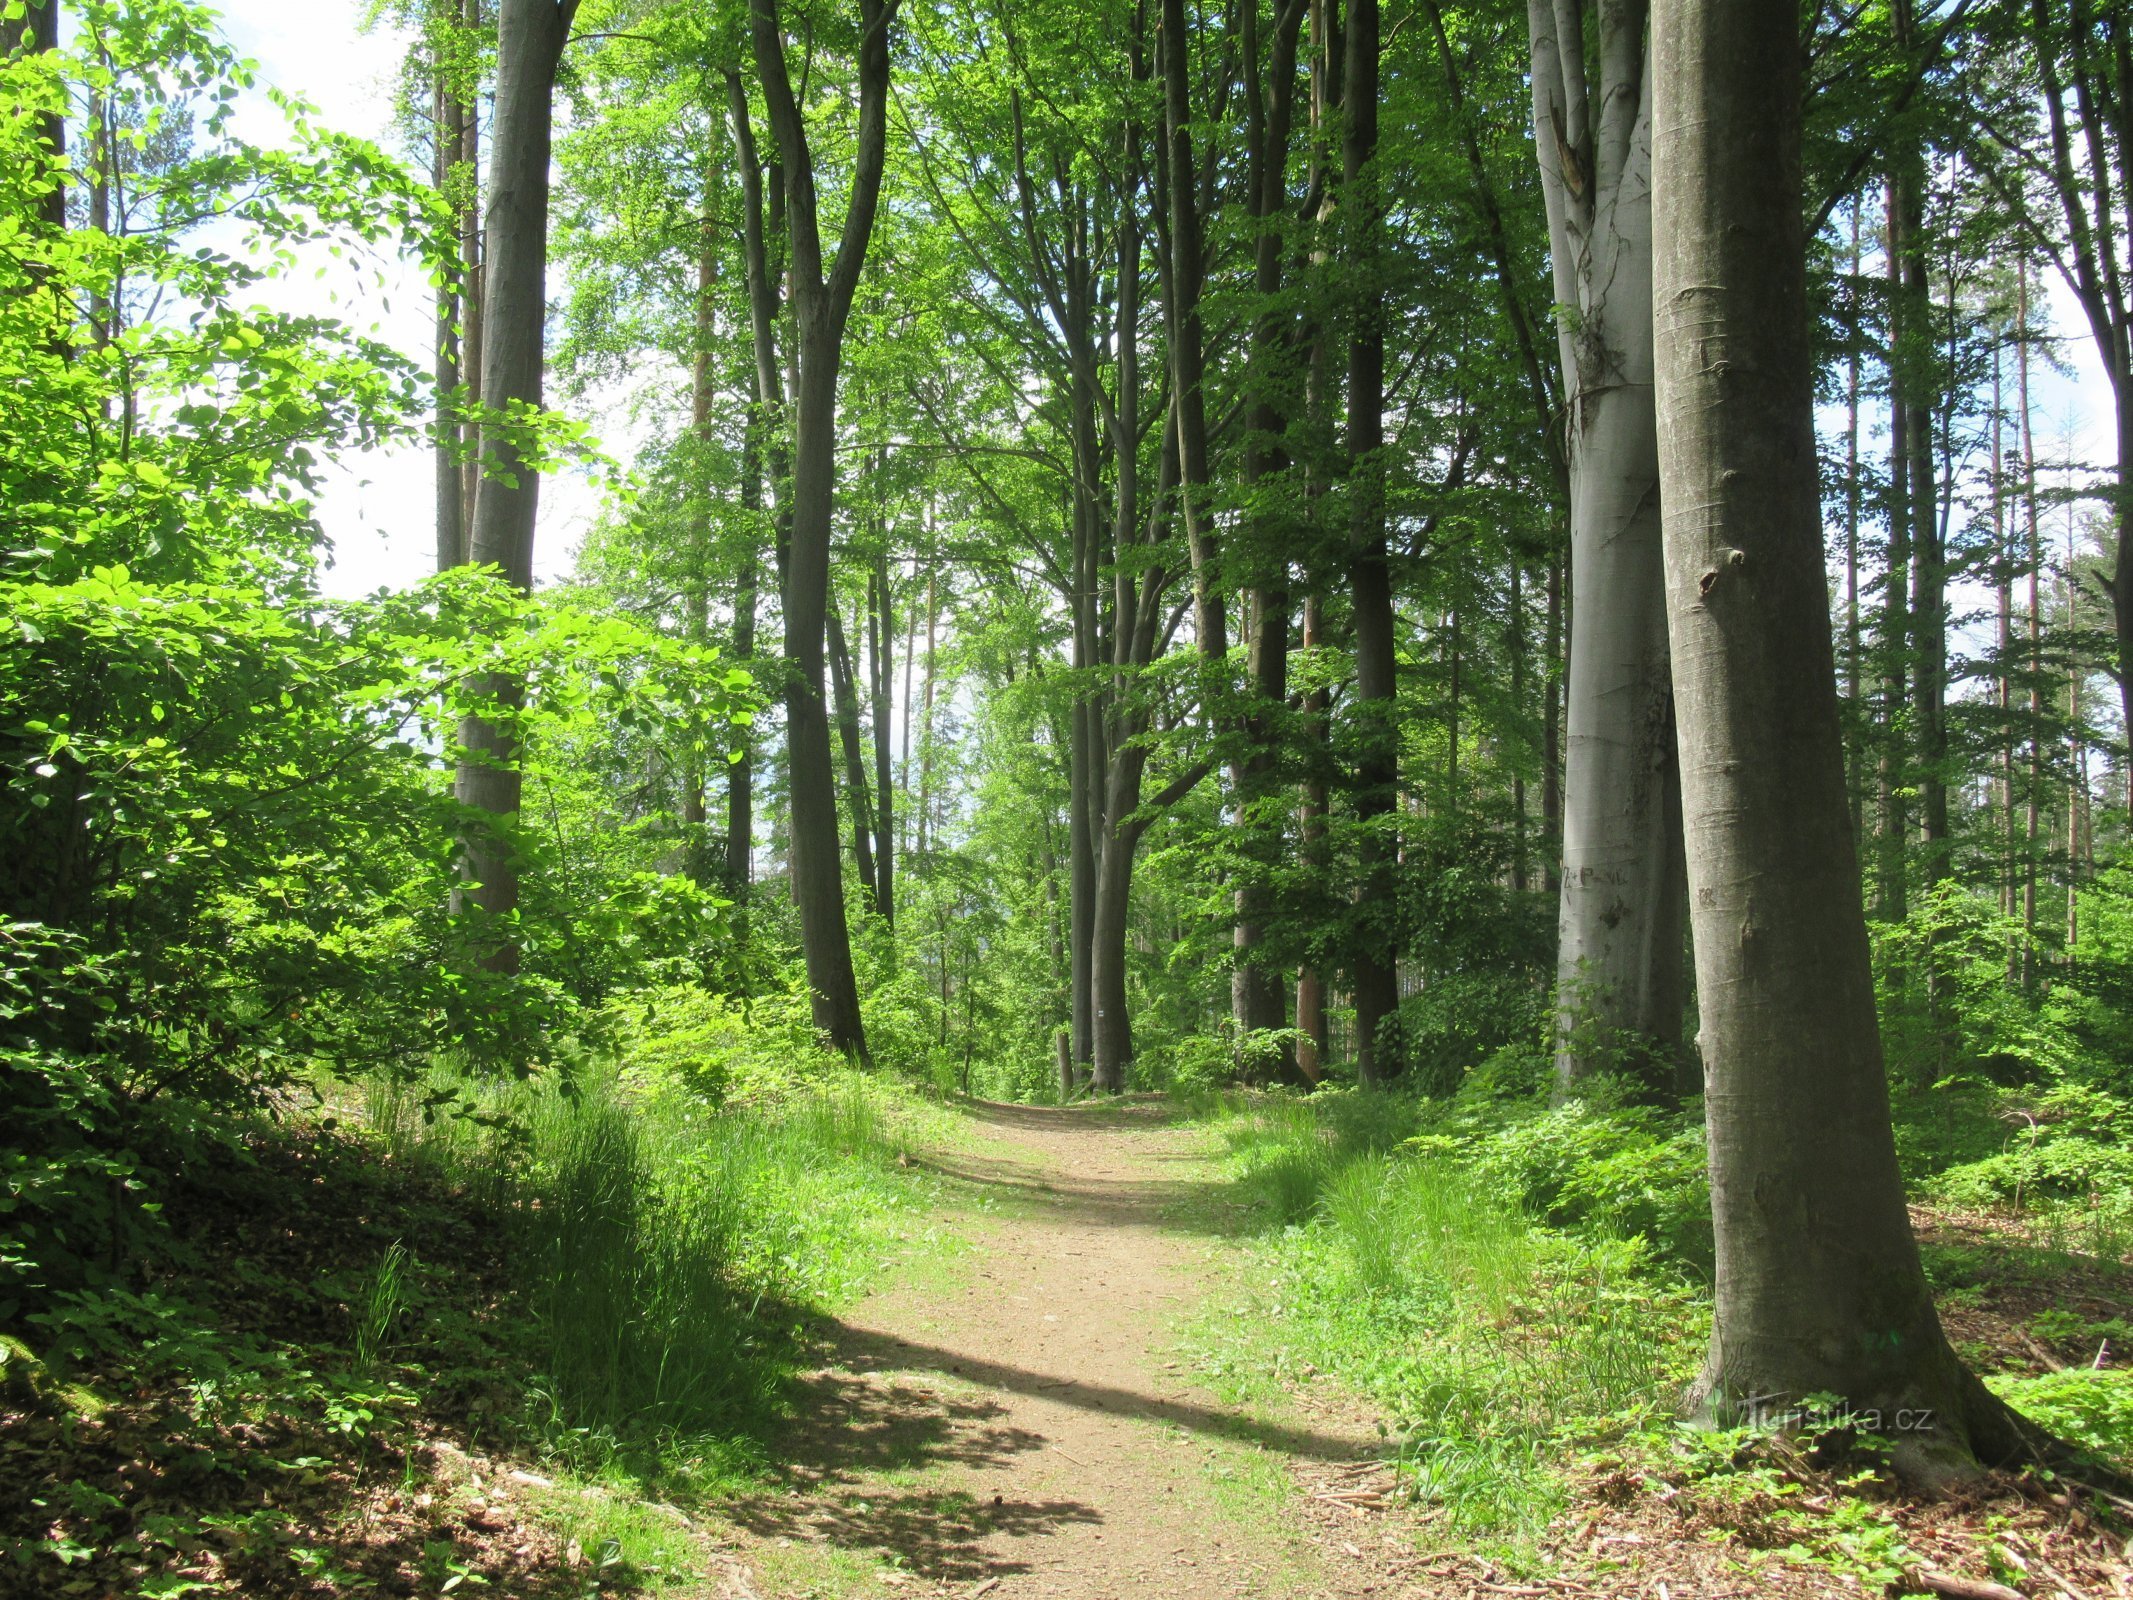 Ruta većim dijelom vodi kroz bjelogorične šume